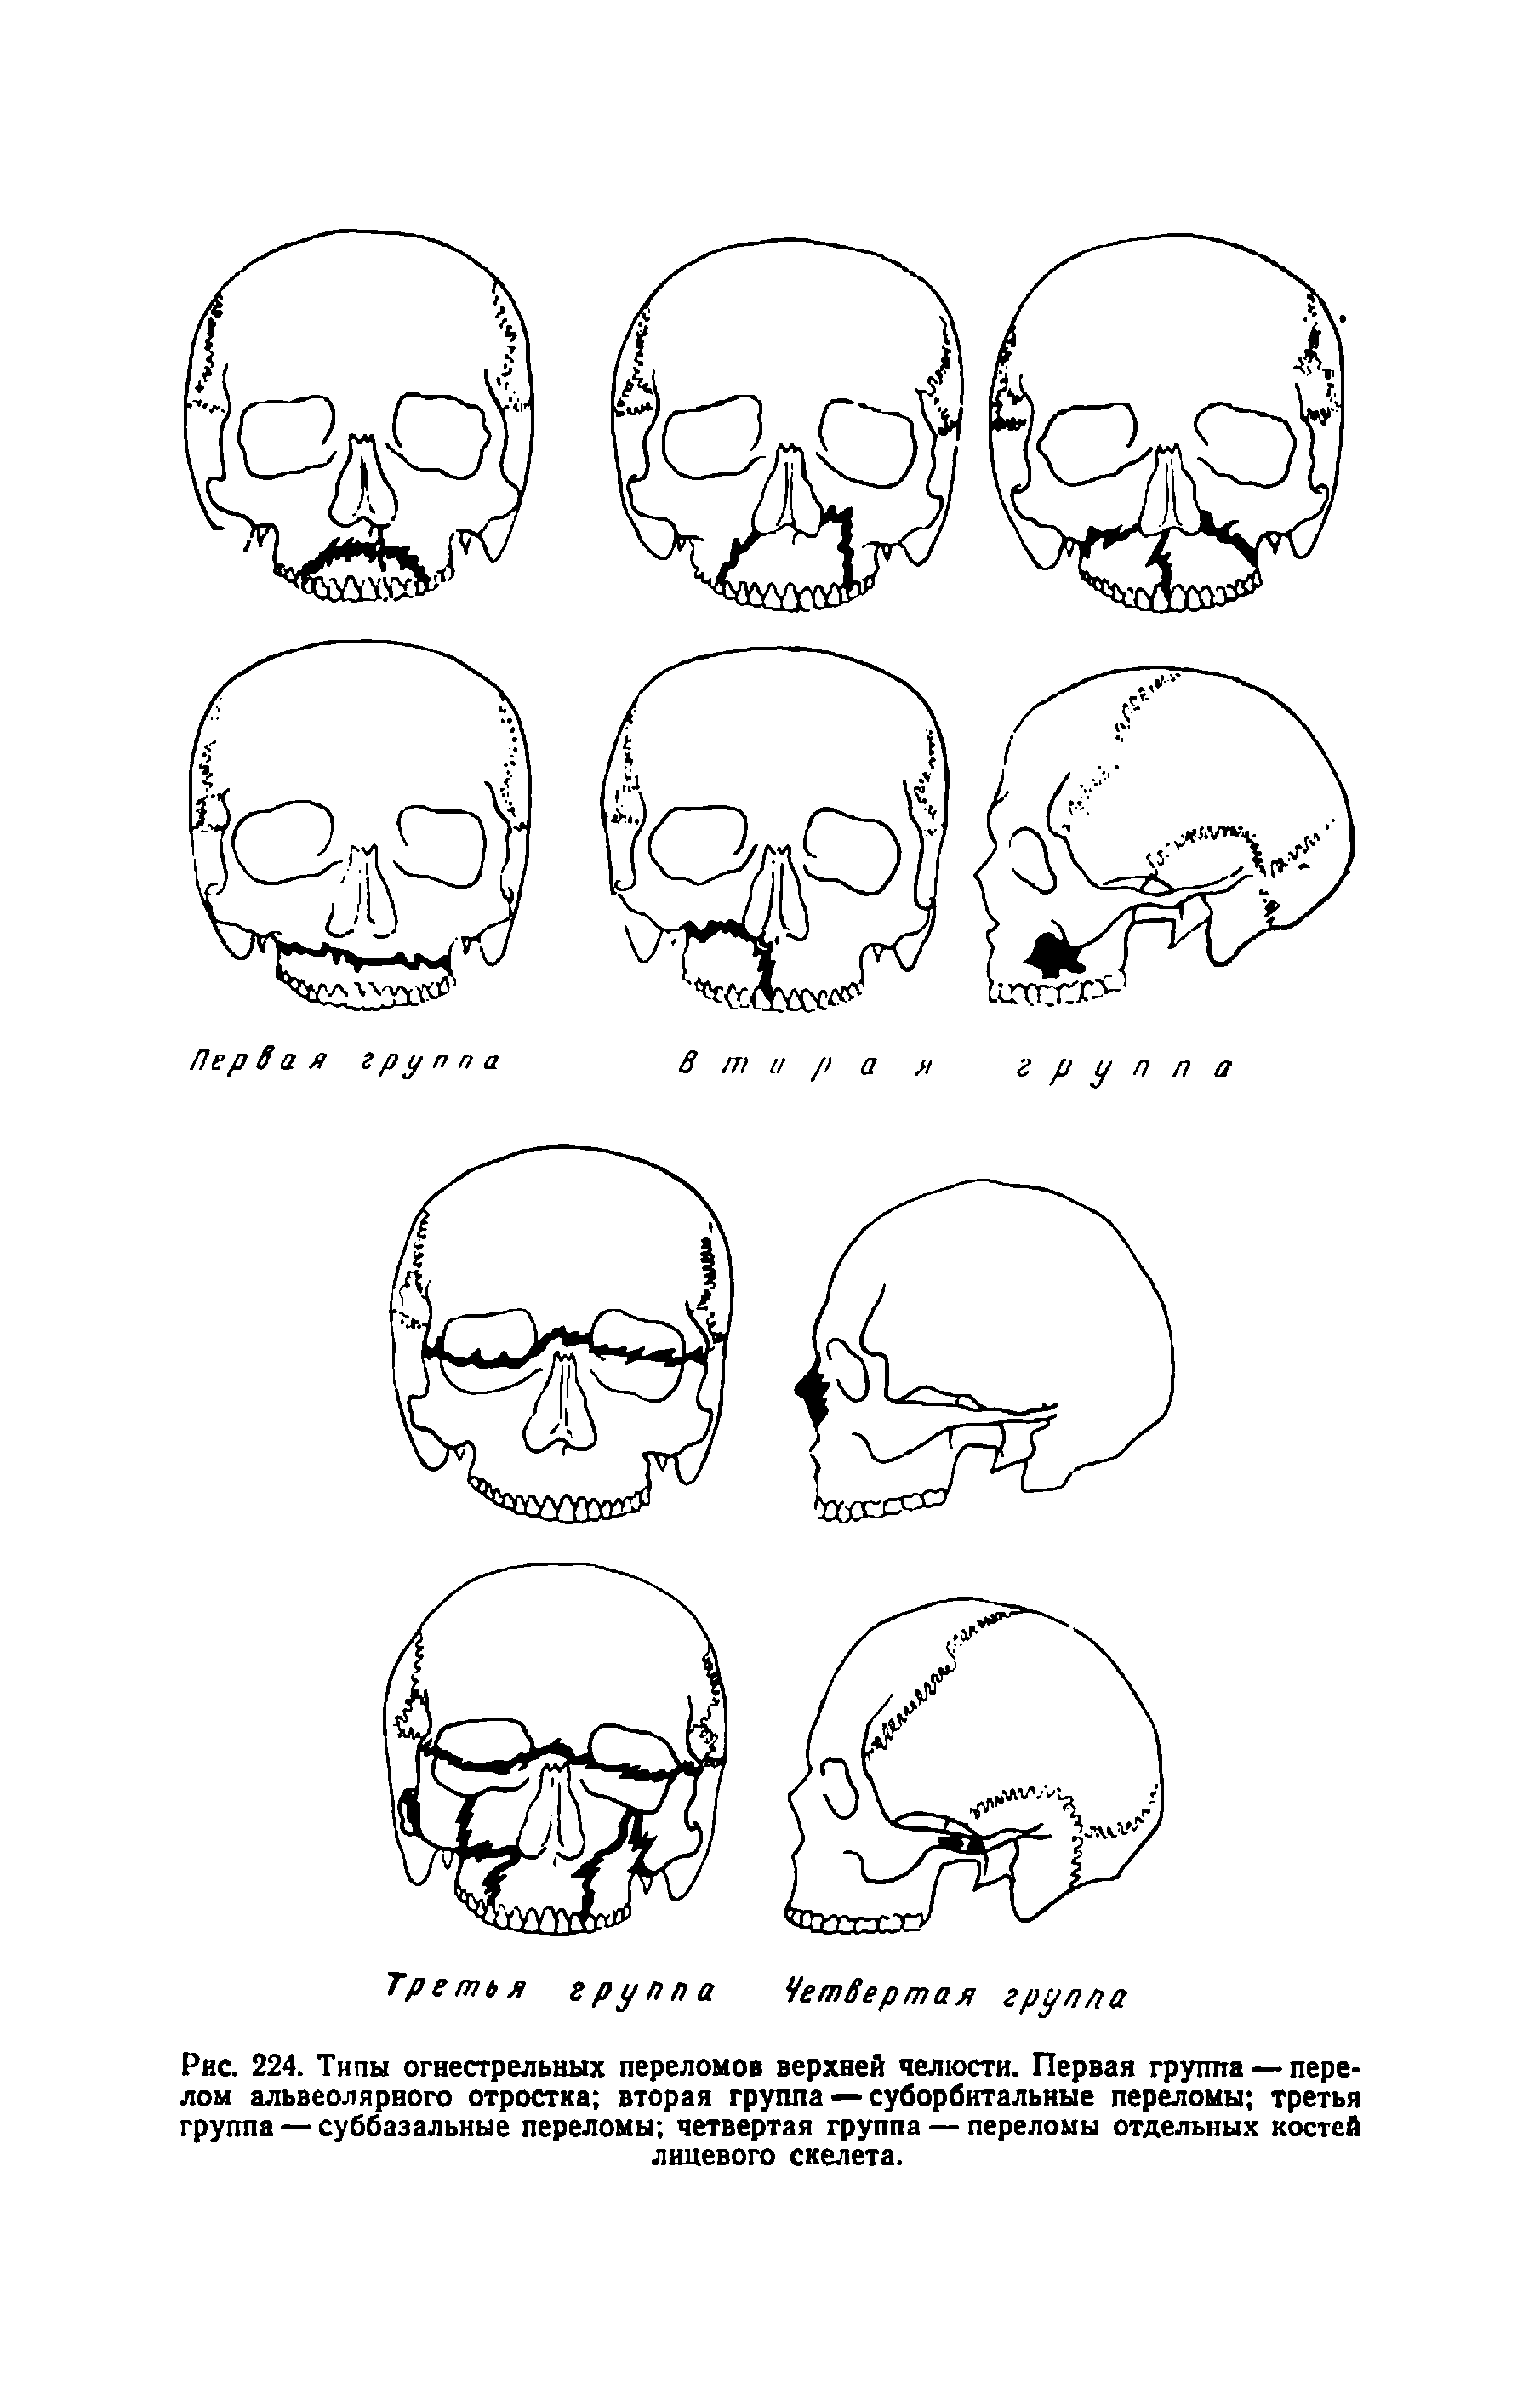 Рис. 224. Типы огнестрельных переломов верхней челюсти. Первая группа — перелом альвеолярного отростка вторая группа — суборбитальные переломы третья группа — суббазальные переломы четвертая группа — переломы отдельных костей лицевого скелета.